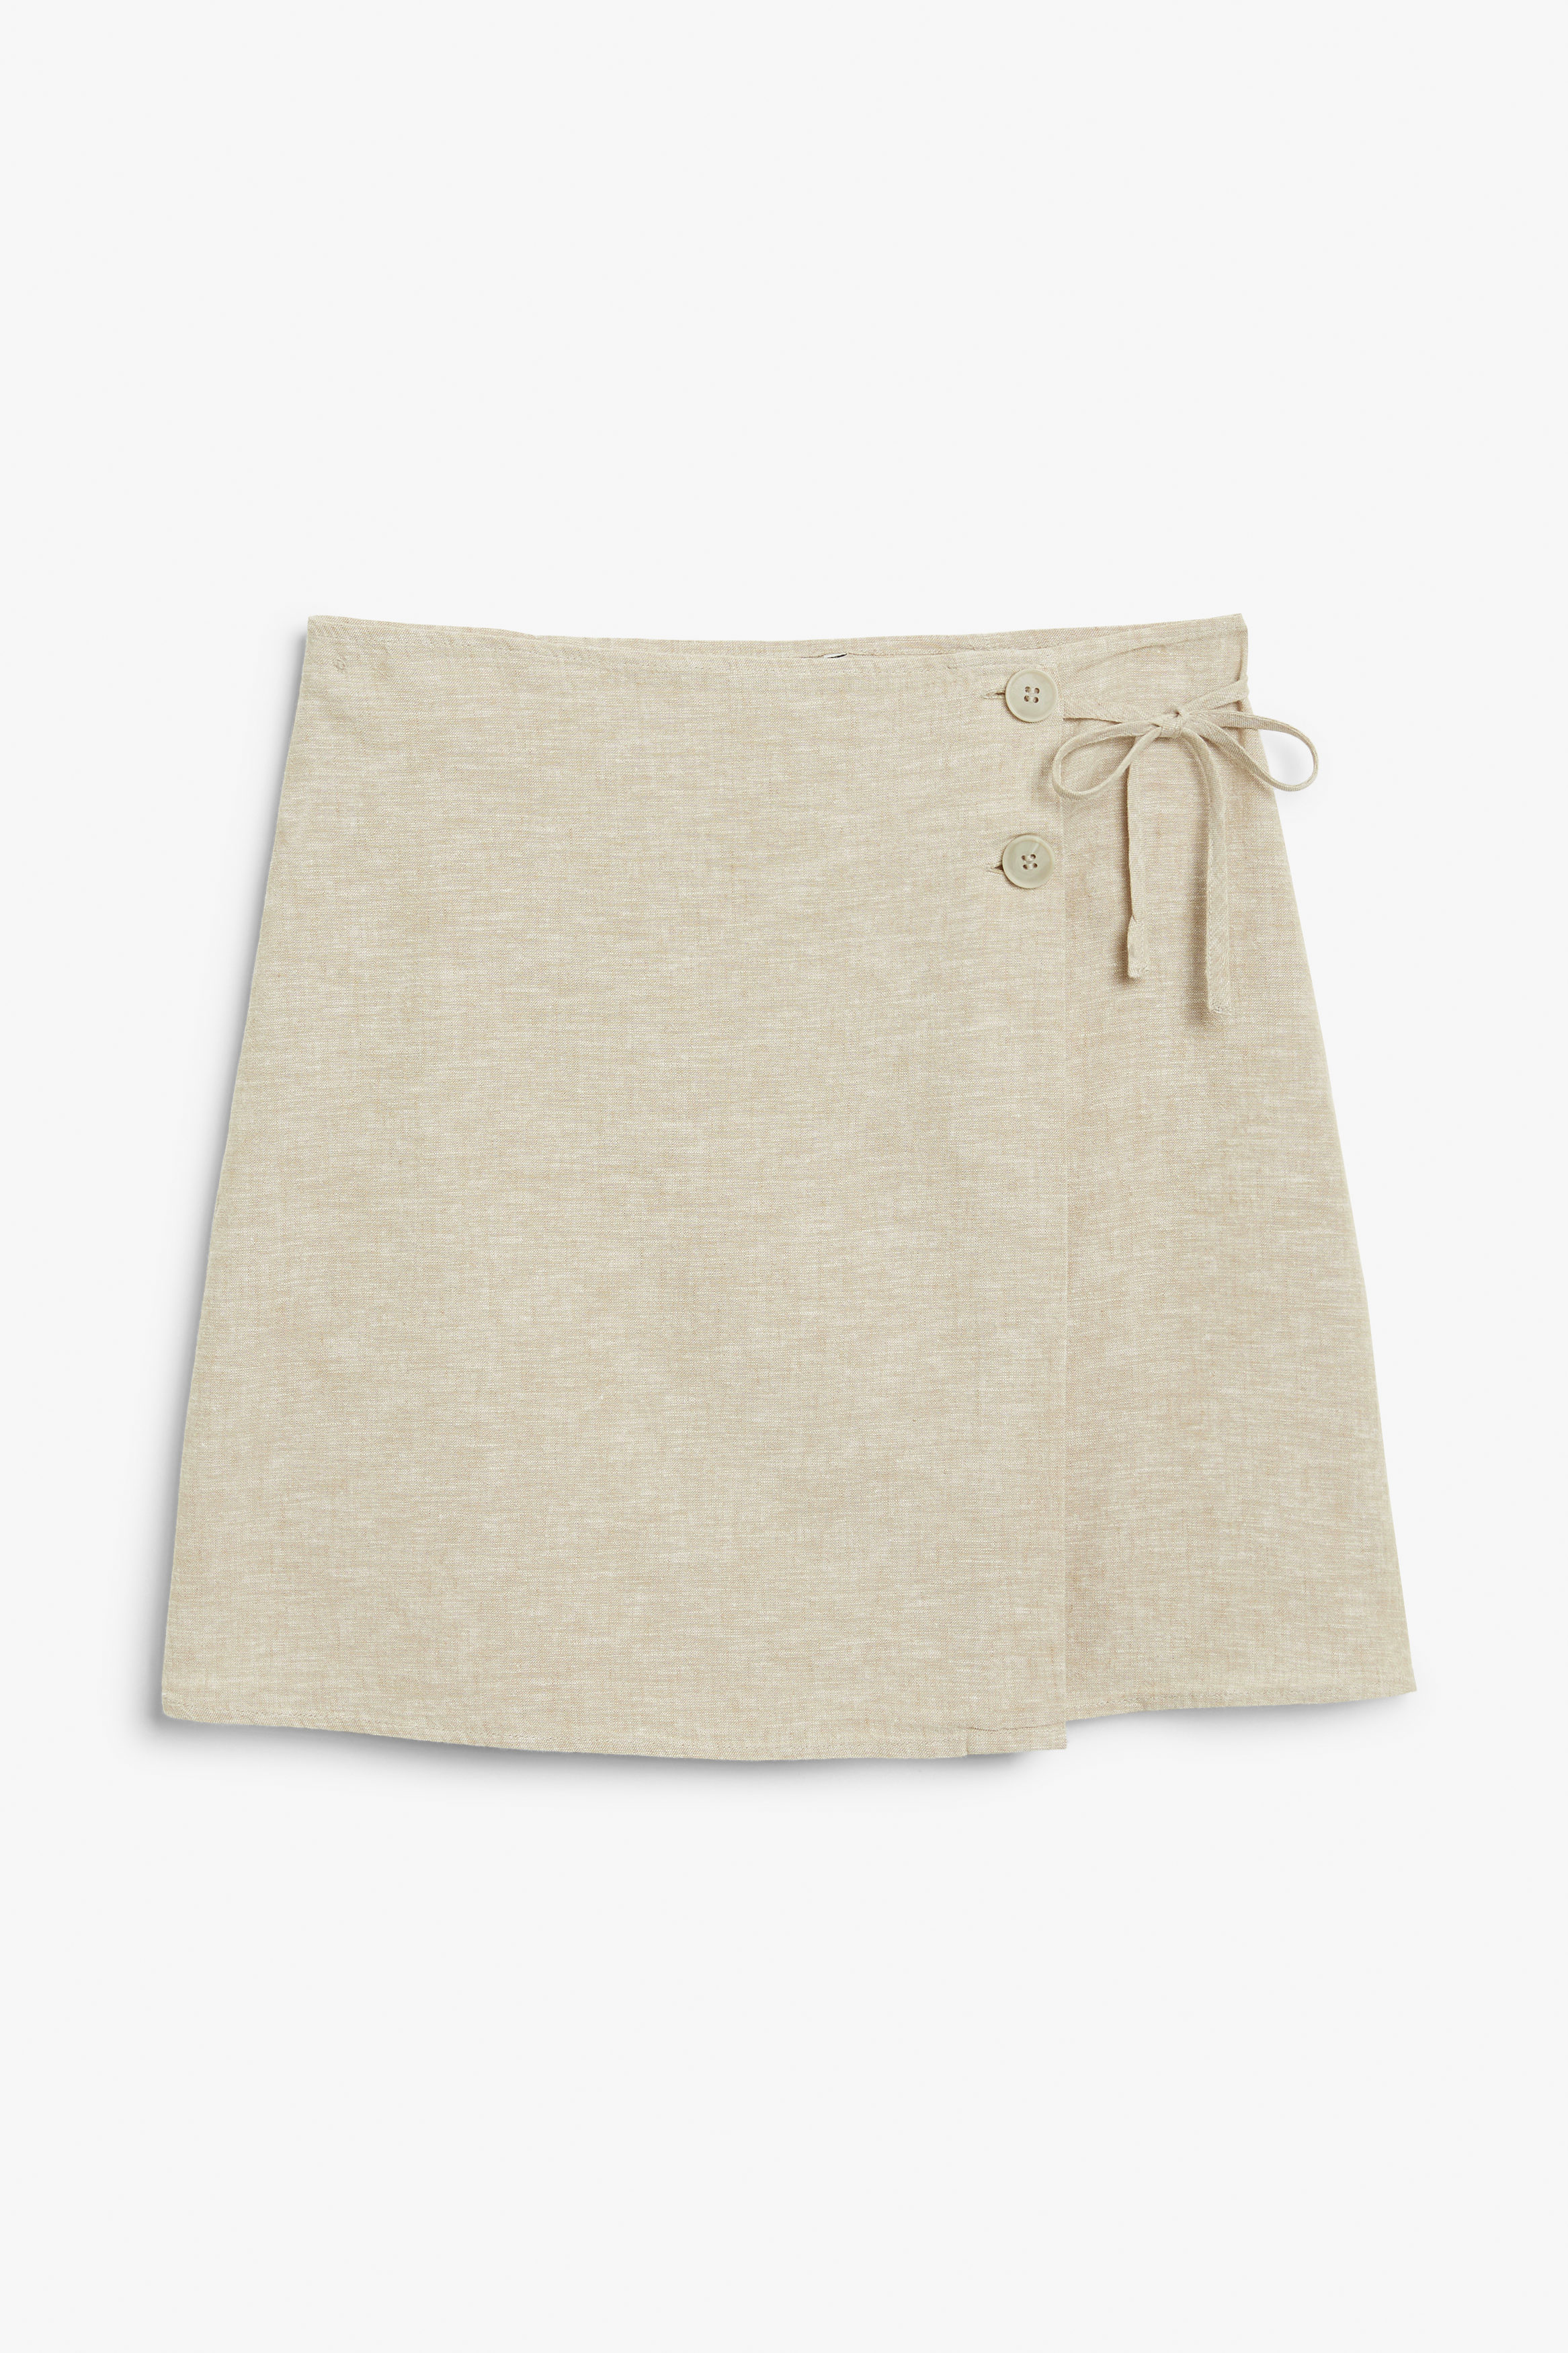 Billede af Monki Slå Om-nederdel I Hørblanding Muldvarpebrun, Nederdele. Farve: Mole størrelse 48